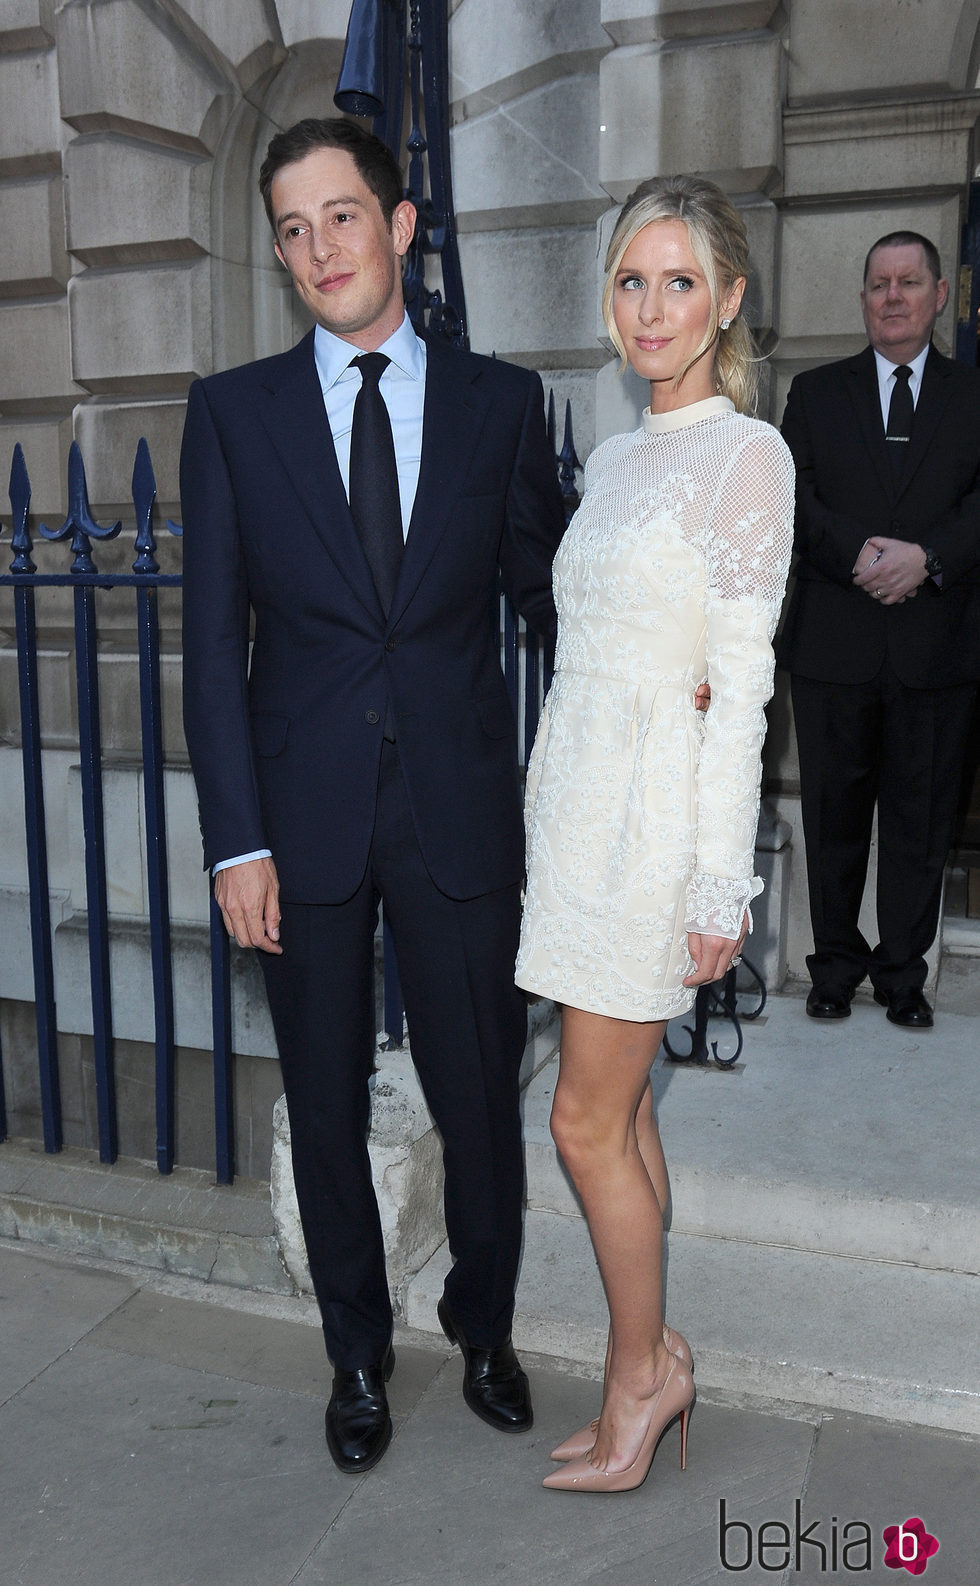 James Rothschild y Nicky Hilton en la celebración previa a su boda